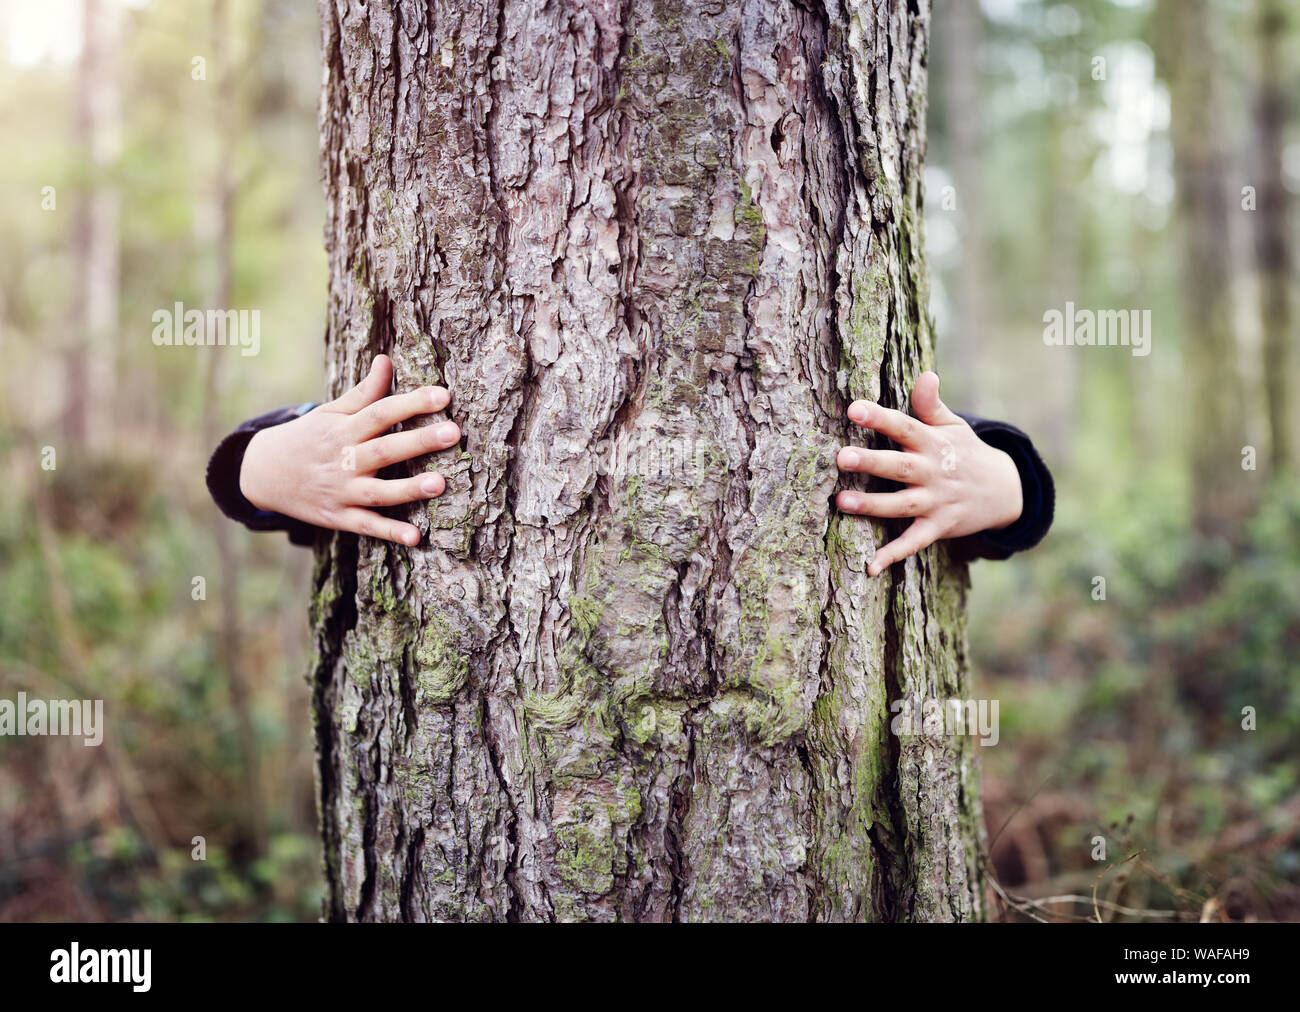 Baum umarmen, kleinen Jungen, ein Baum, eine Umarmung Konzept für die Natur lieben Stockfoto